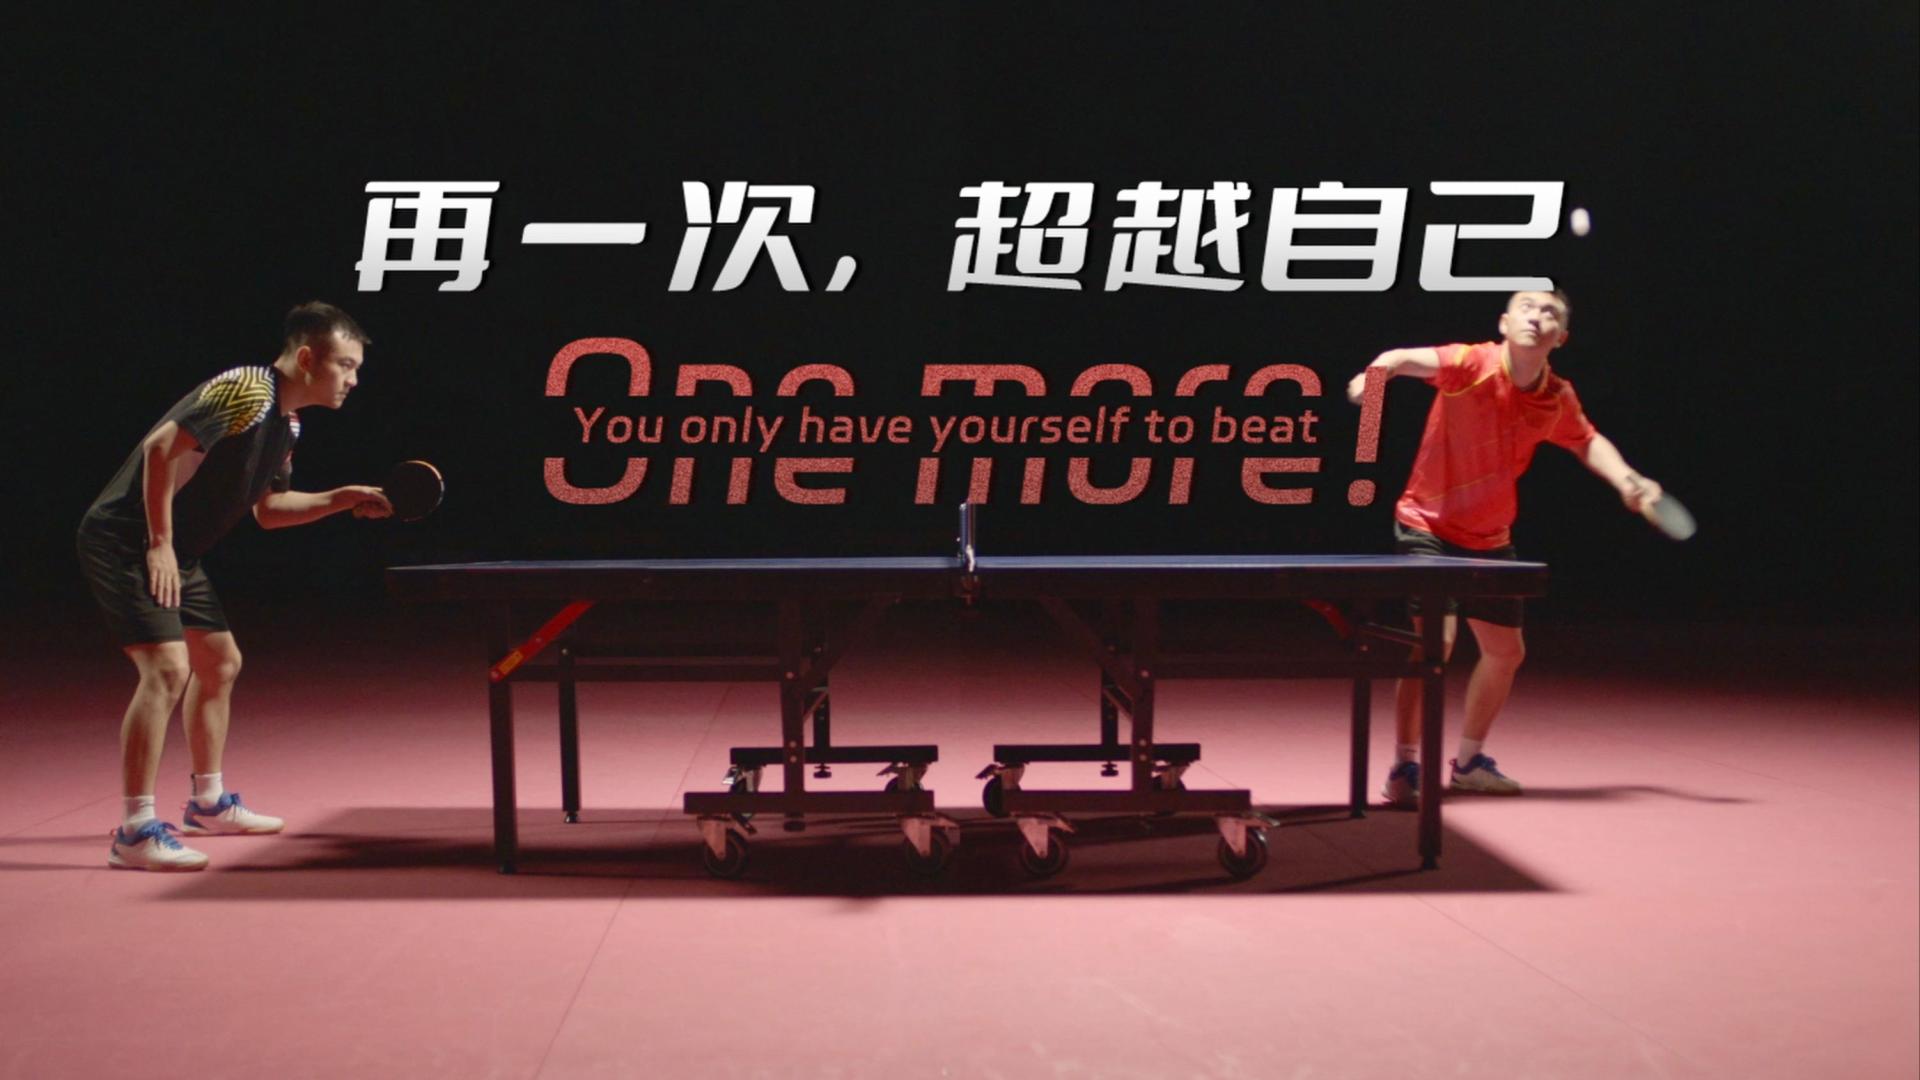 燃！成都大运会乒乓球英文宣传片《ONE MORE！再一次，超越自己》